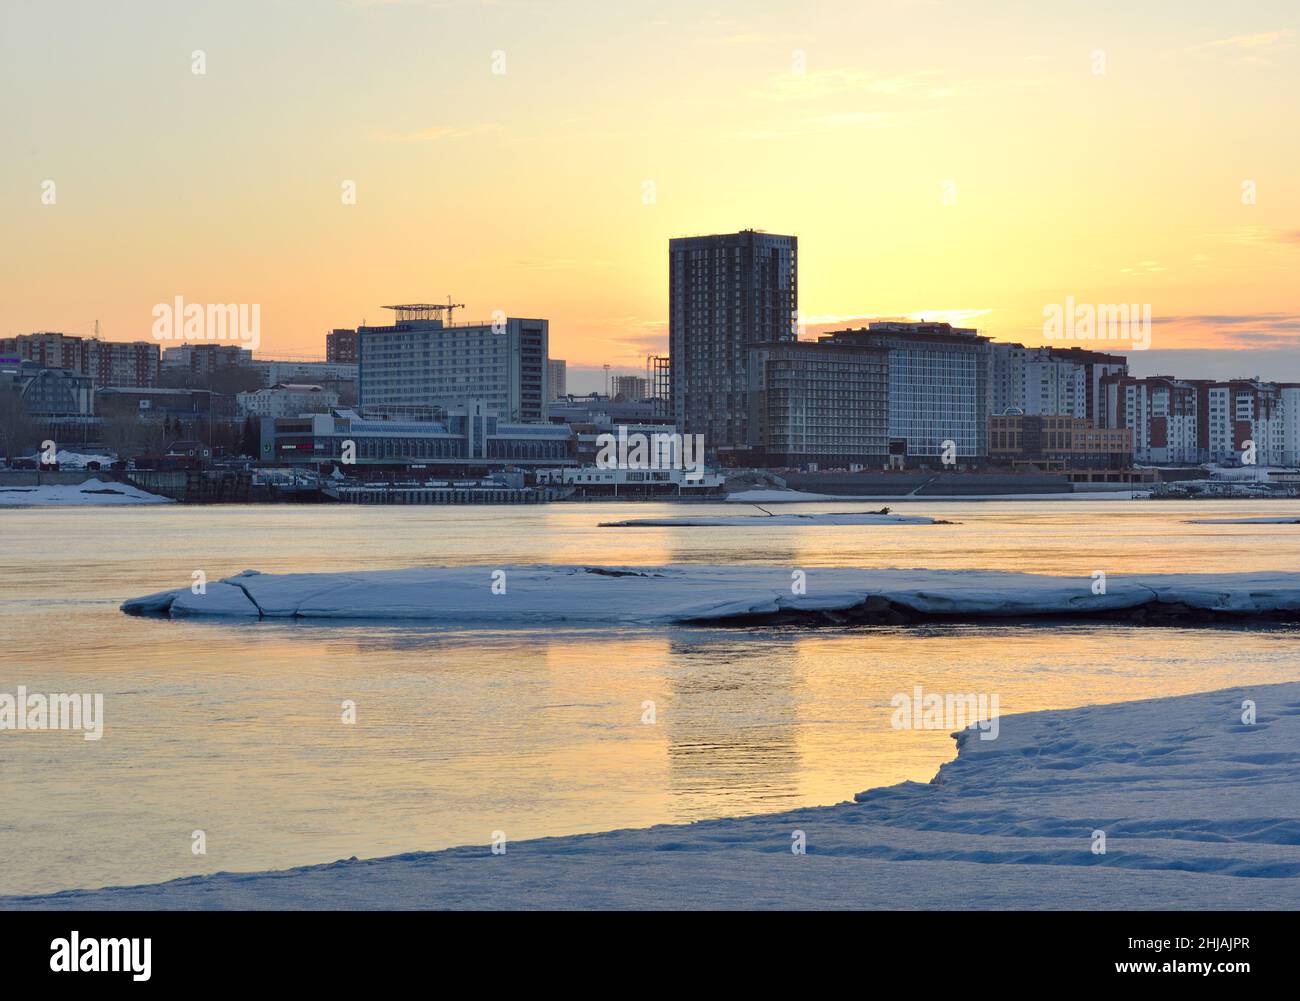 Die Obi-Küste im Morgengrauen, Schnee und Eis am Ufer im Frühling, hohe moderne Häuser am Horizont, Spiegelungen im Wasser, goldener Himmel. Russland, Sibirien, Stockfoto